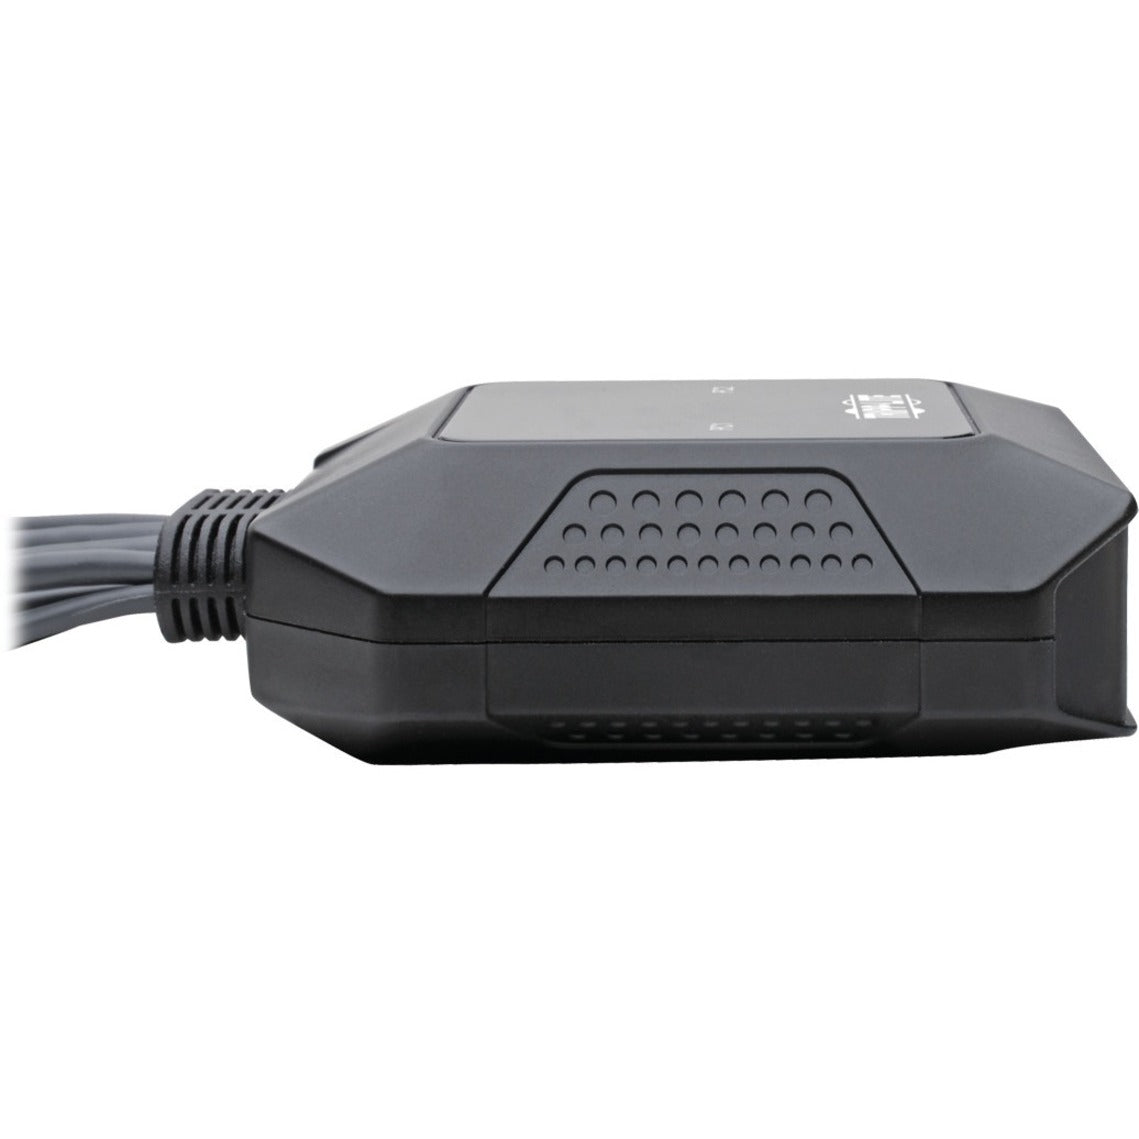 Tripp Lite B032-DPUA2 2-Port DisplayPort/USB KVM Switch, 4096 x 2160 Resolution, 3-Year Warranty